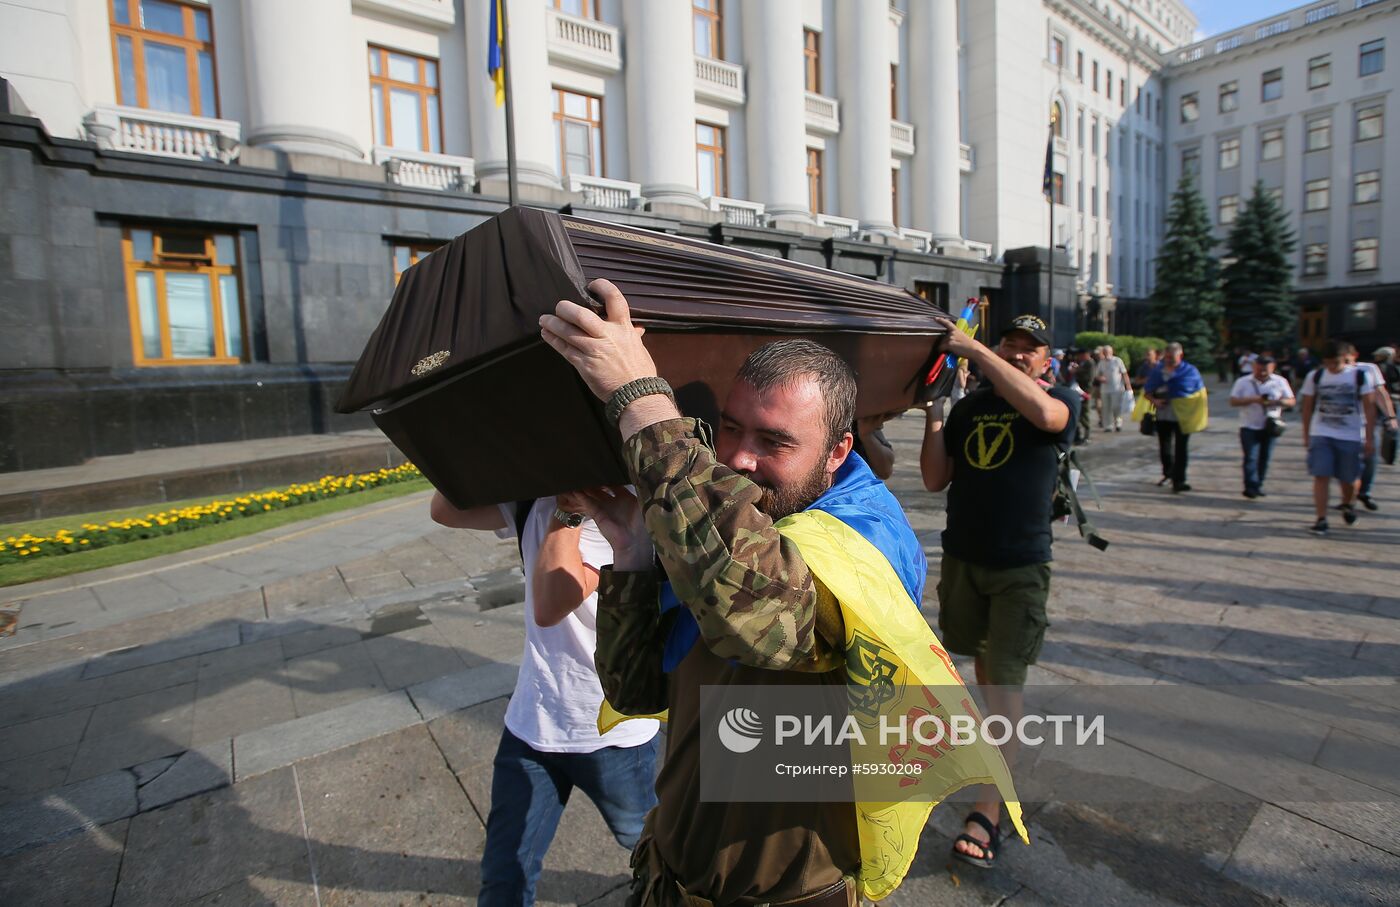 Акция "Панихида по убитой конституции" в Киеве